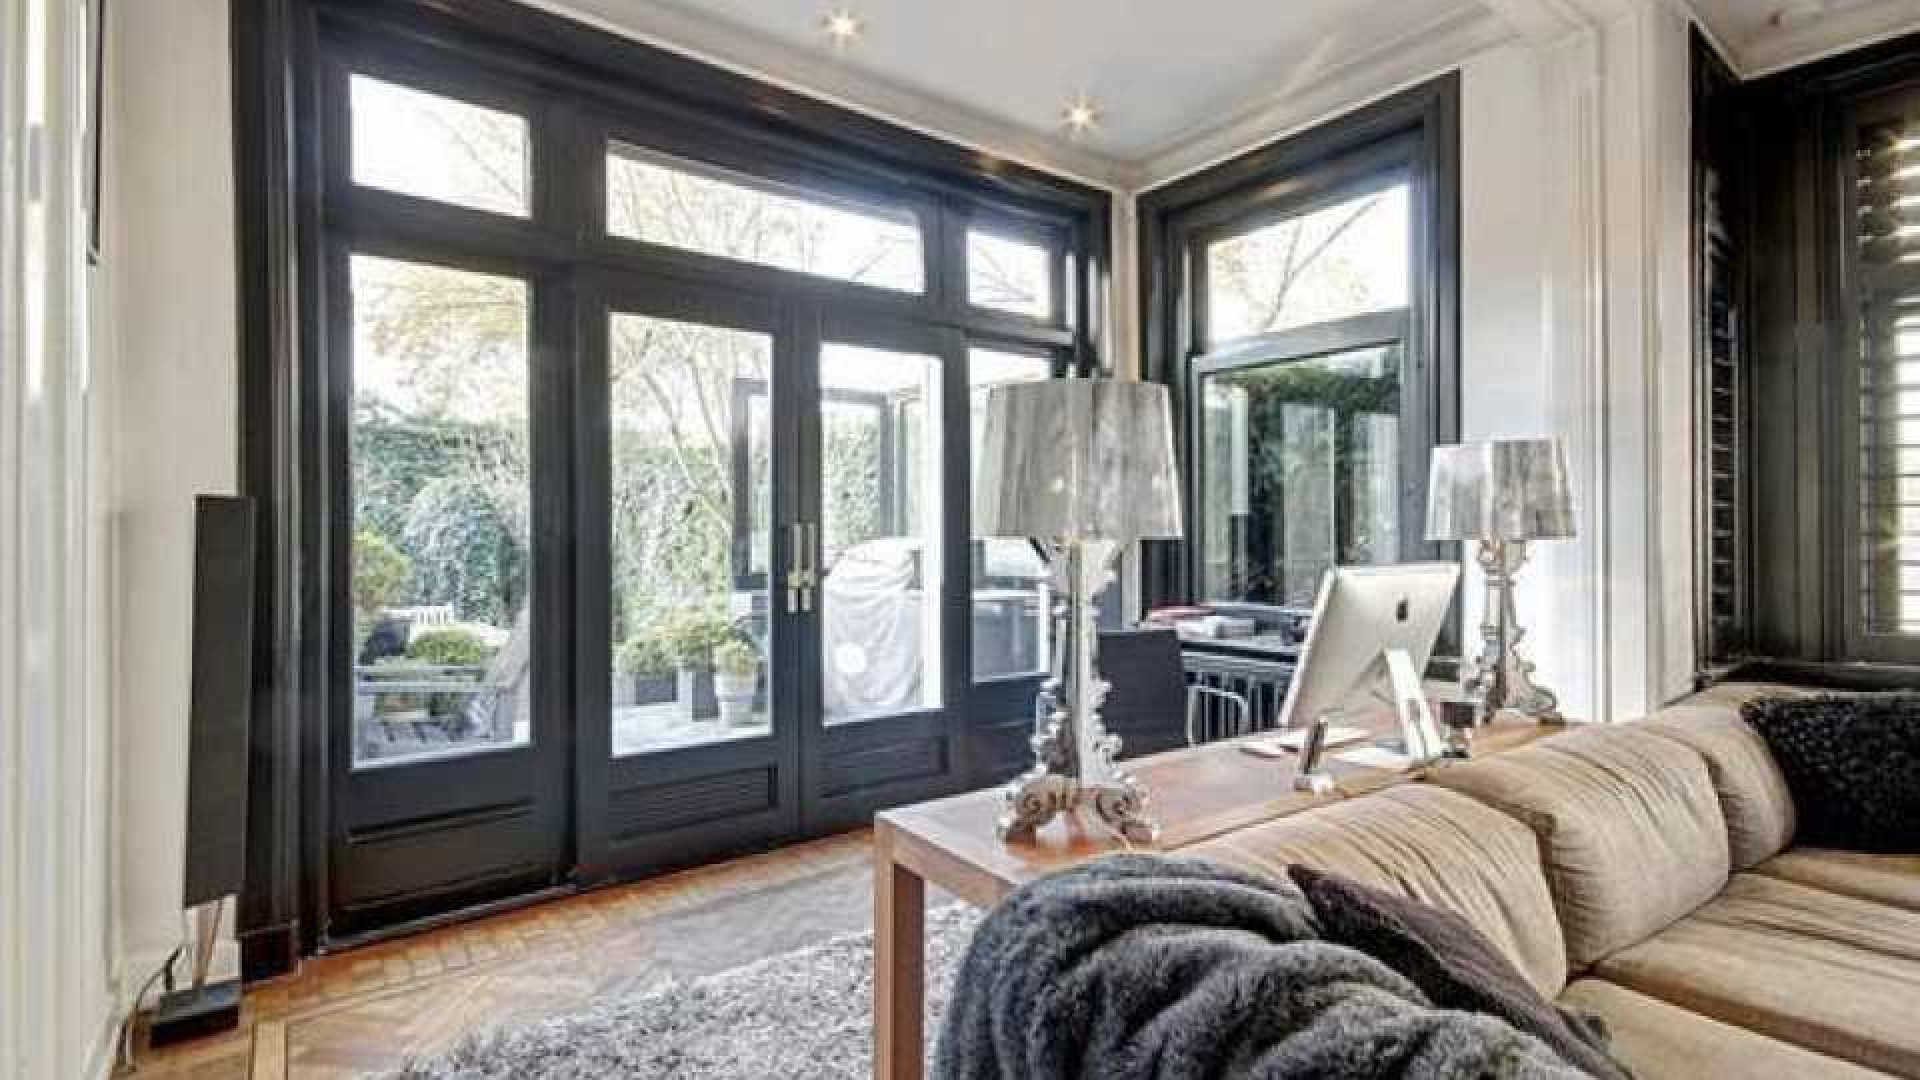 Frank Rijkaard koopt miljoenen villa in Amsterdam Zuid. Zie foto's 2